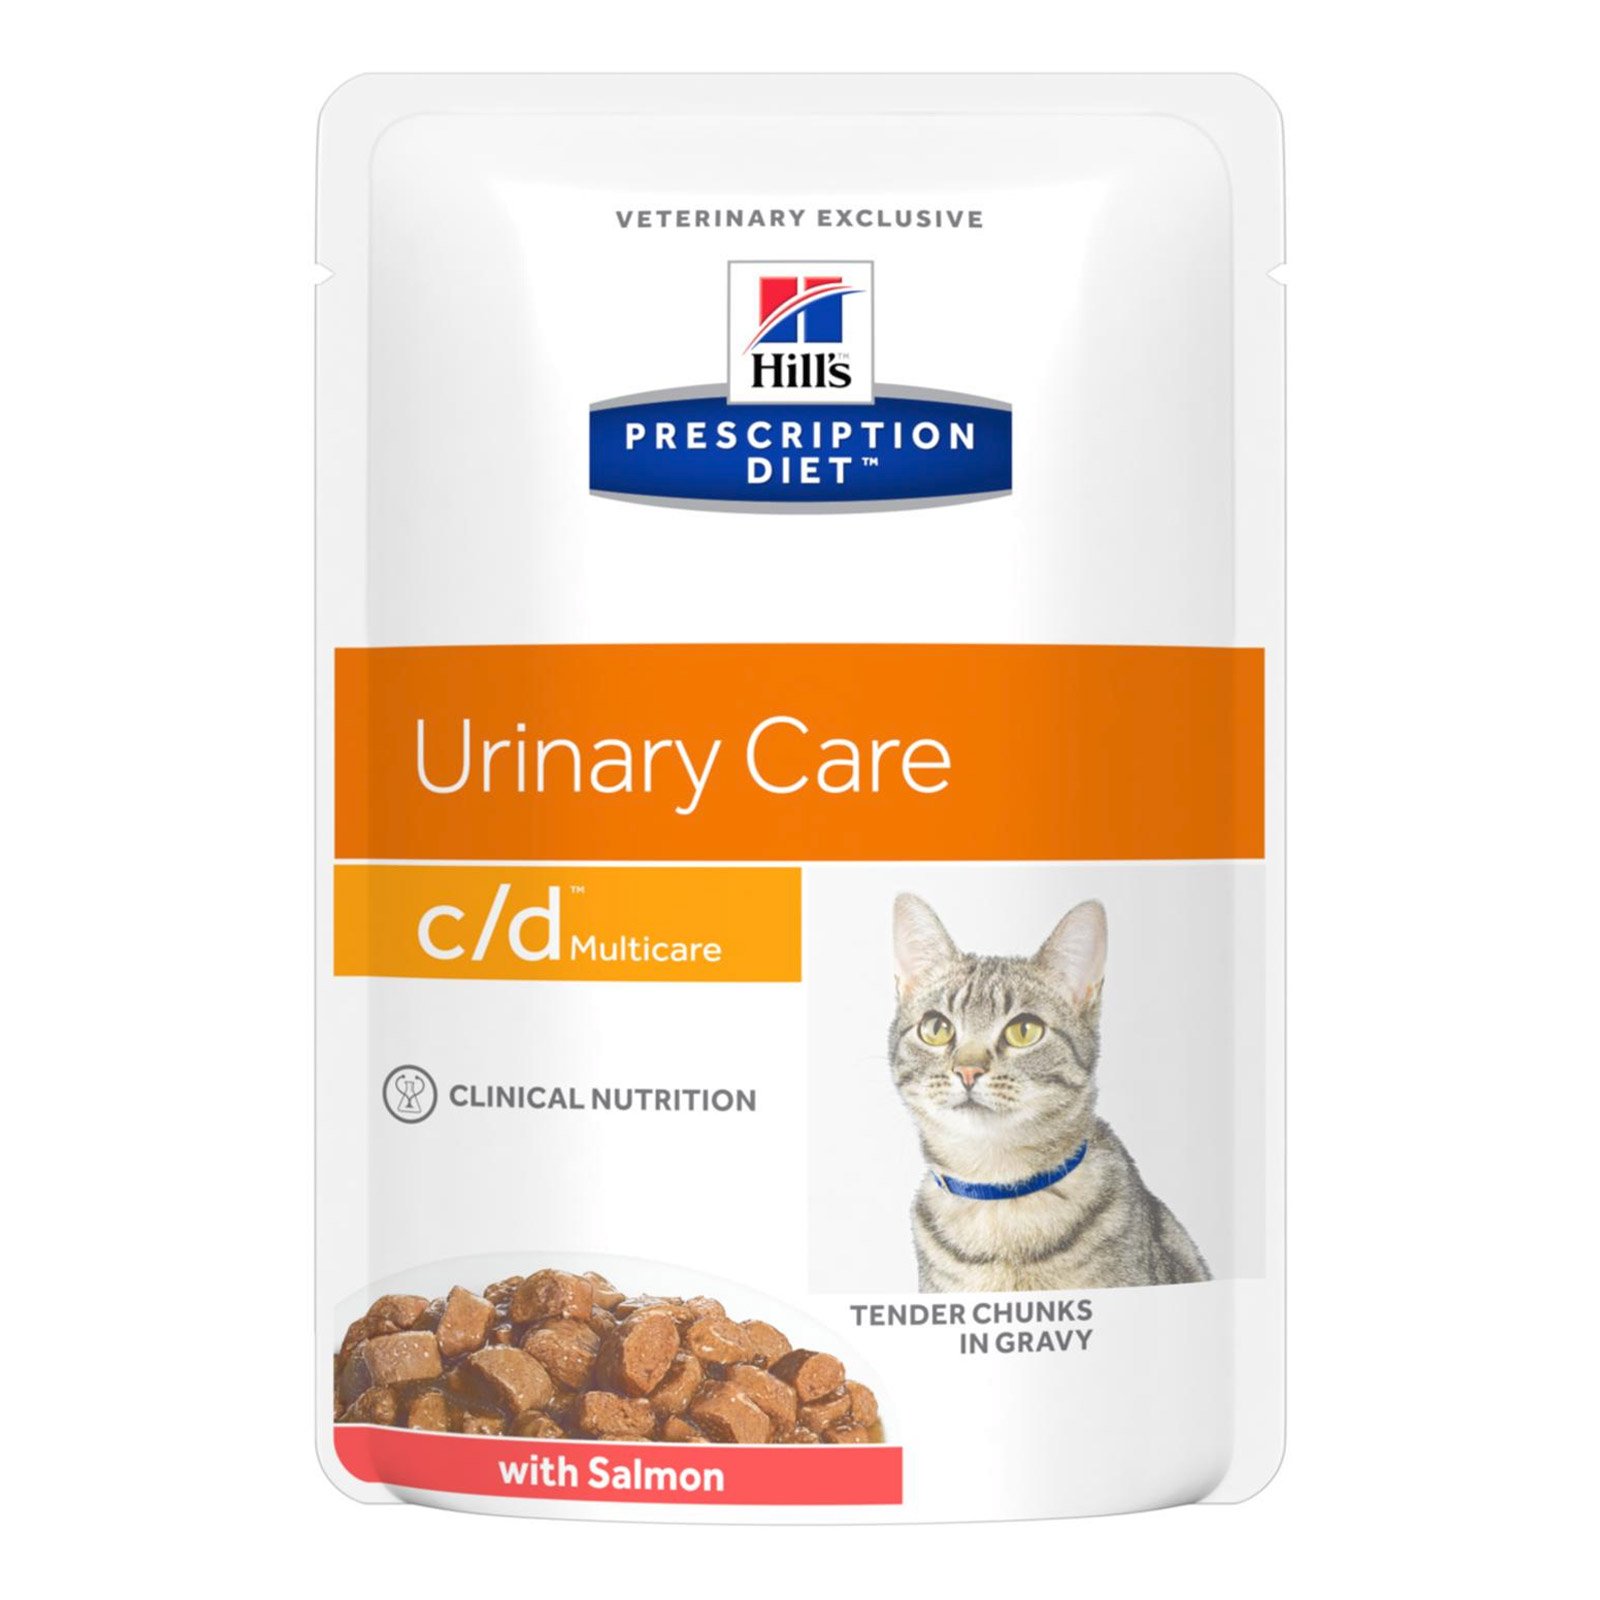 Hill's Prescription Diet c/d Multicare with Ocean Fish Dry Cat Food 85 gms * 12